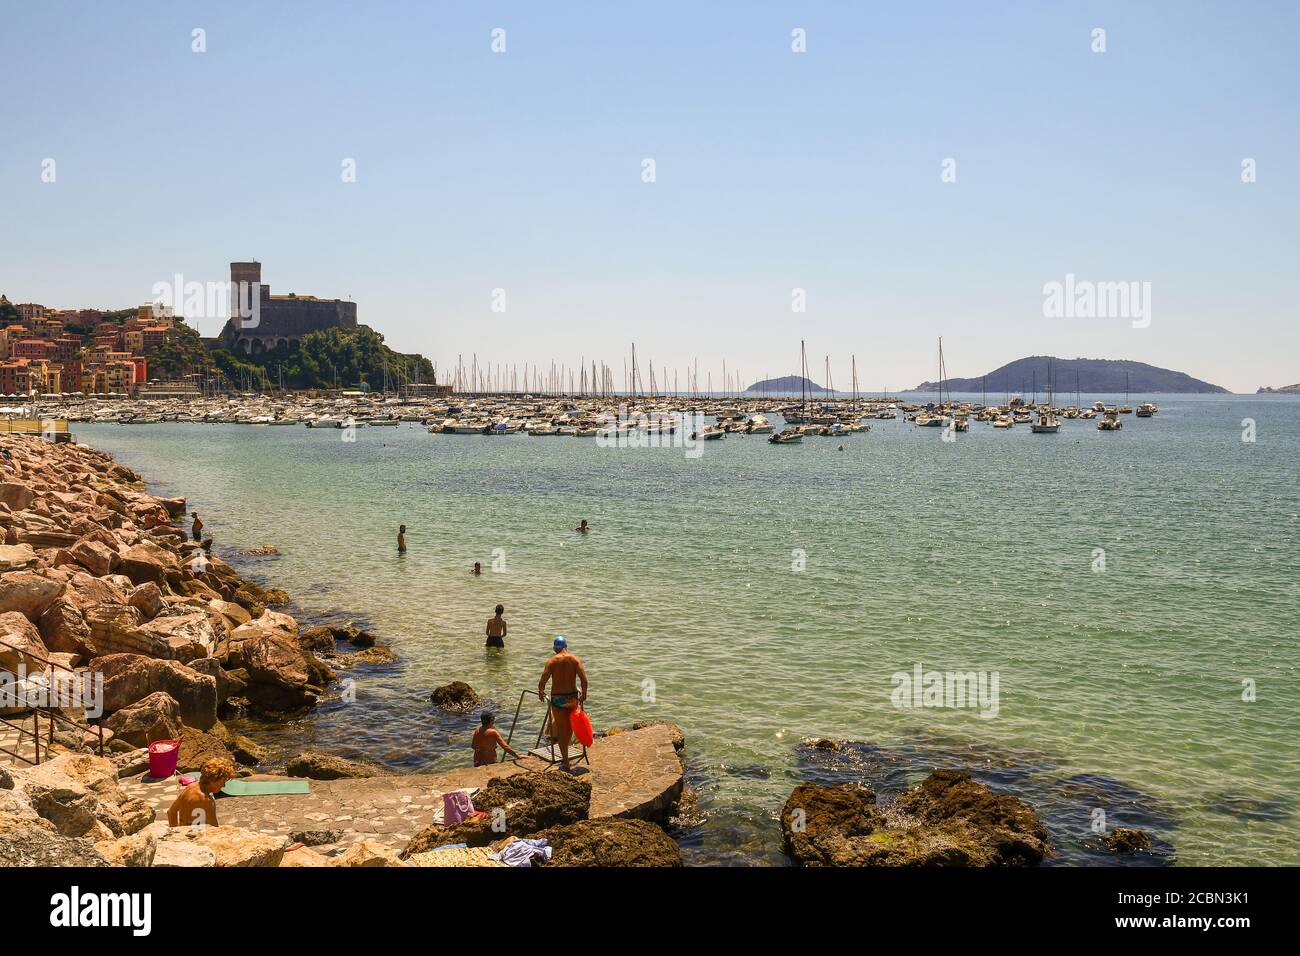 Blick auf den Golf der Dichter mit Menschen, die sich an der Küste abkühlen, den Hafen und das Fischerdorf mit der Burg, Lerici, La Spezia, Lig Stockfoto